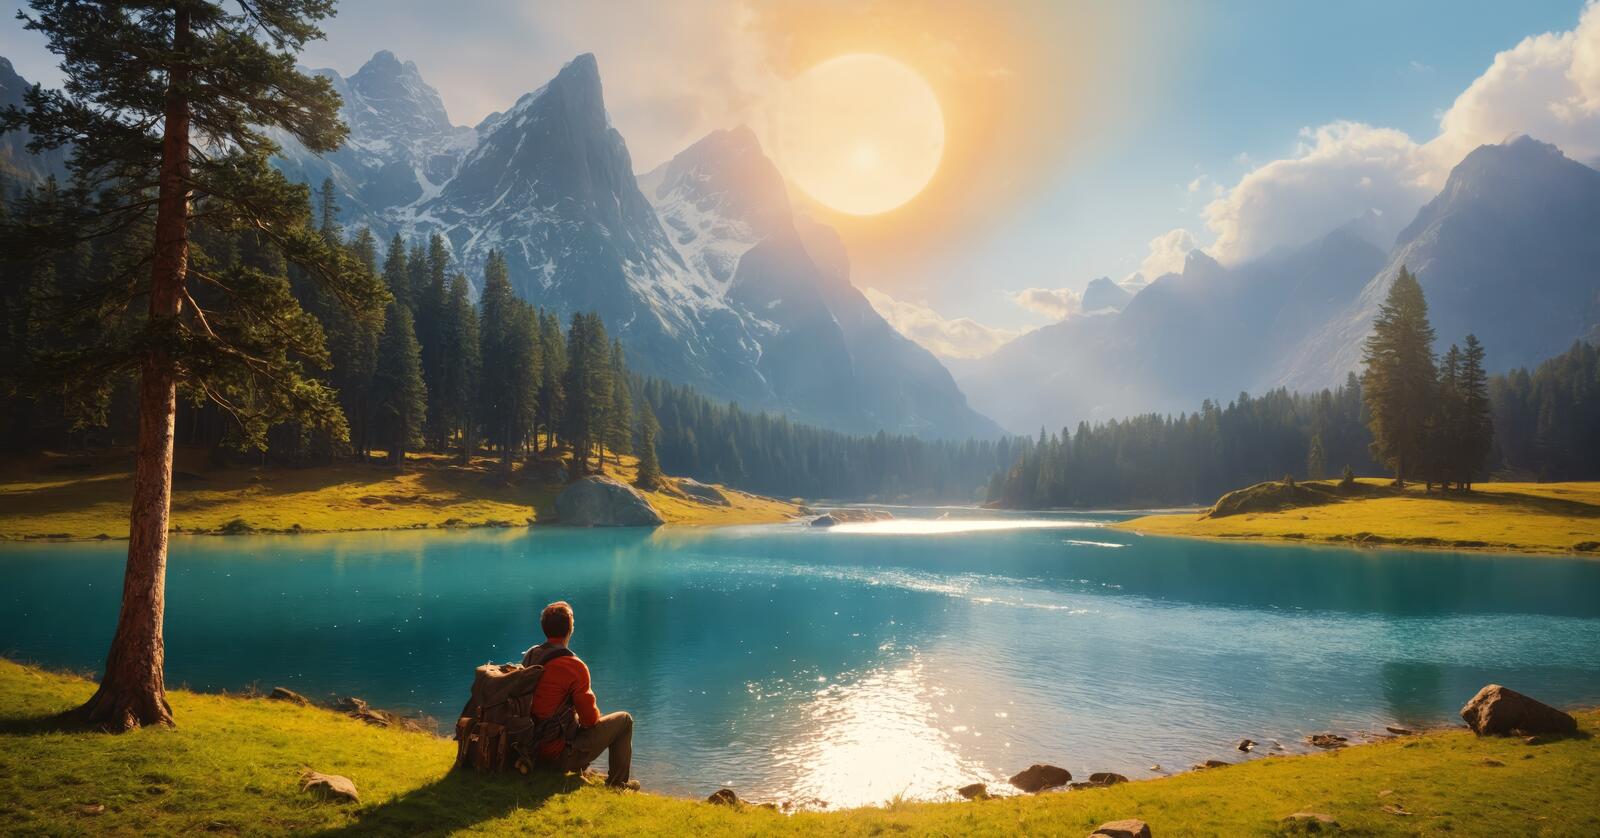 免费照片有一个人坐在湖边。